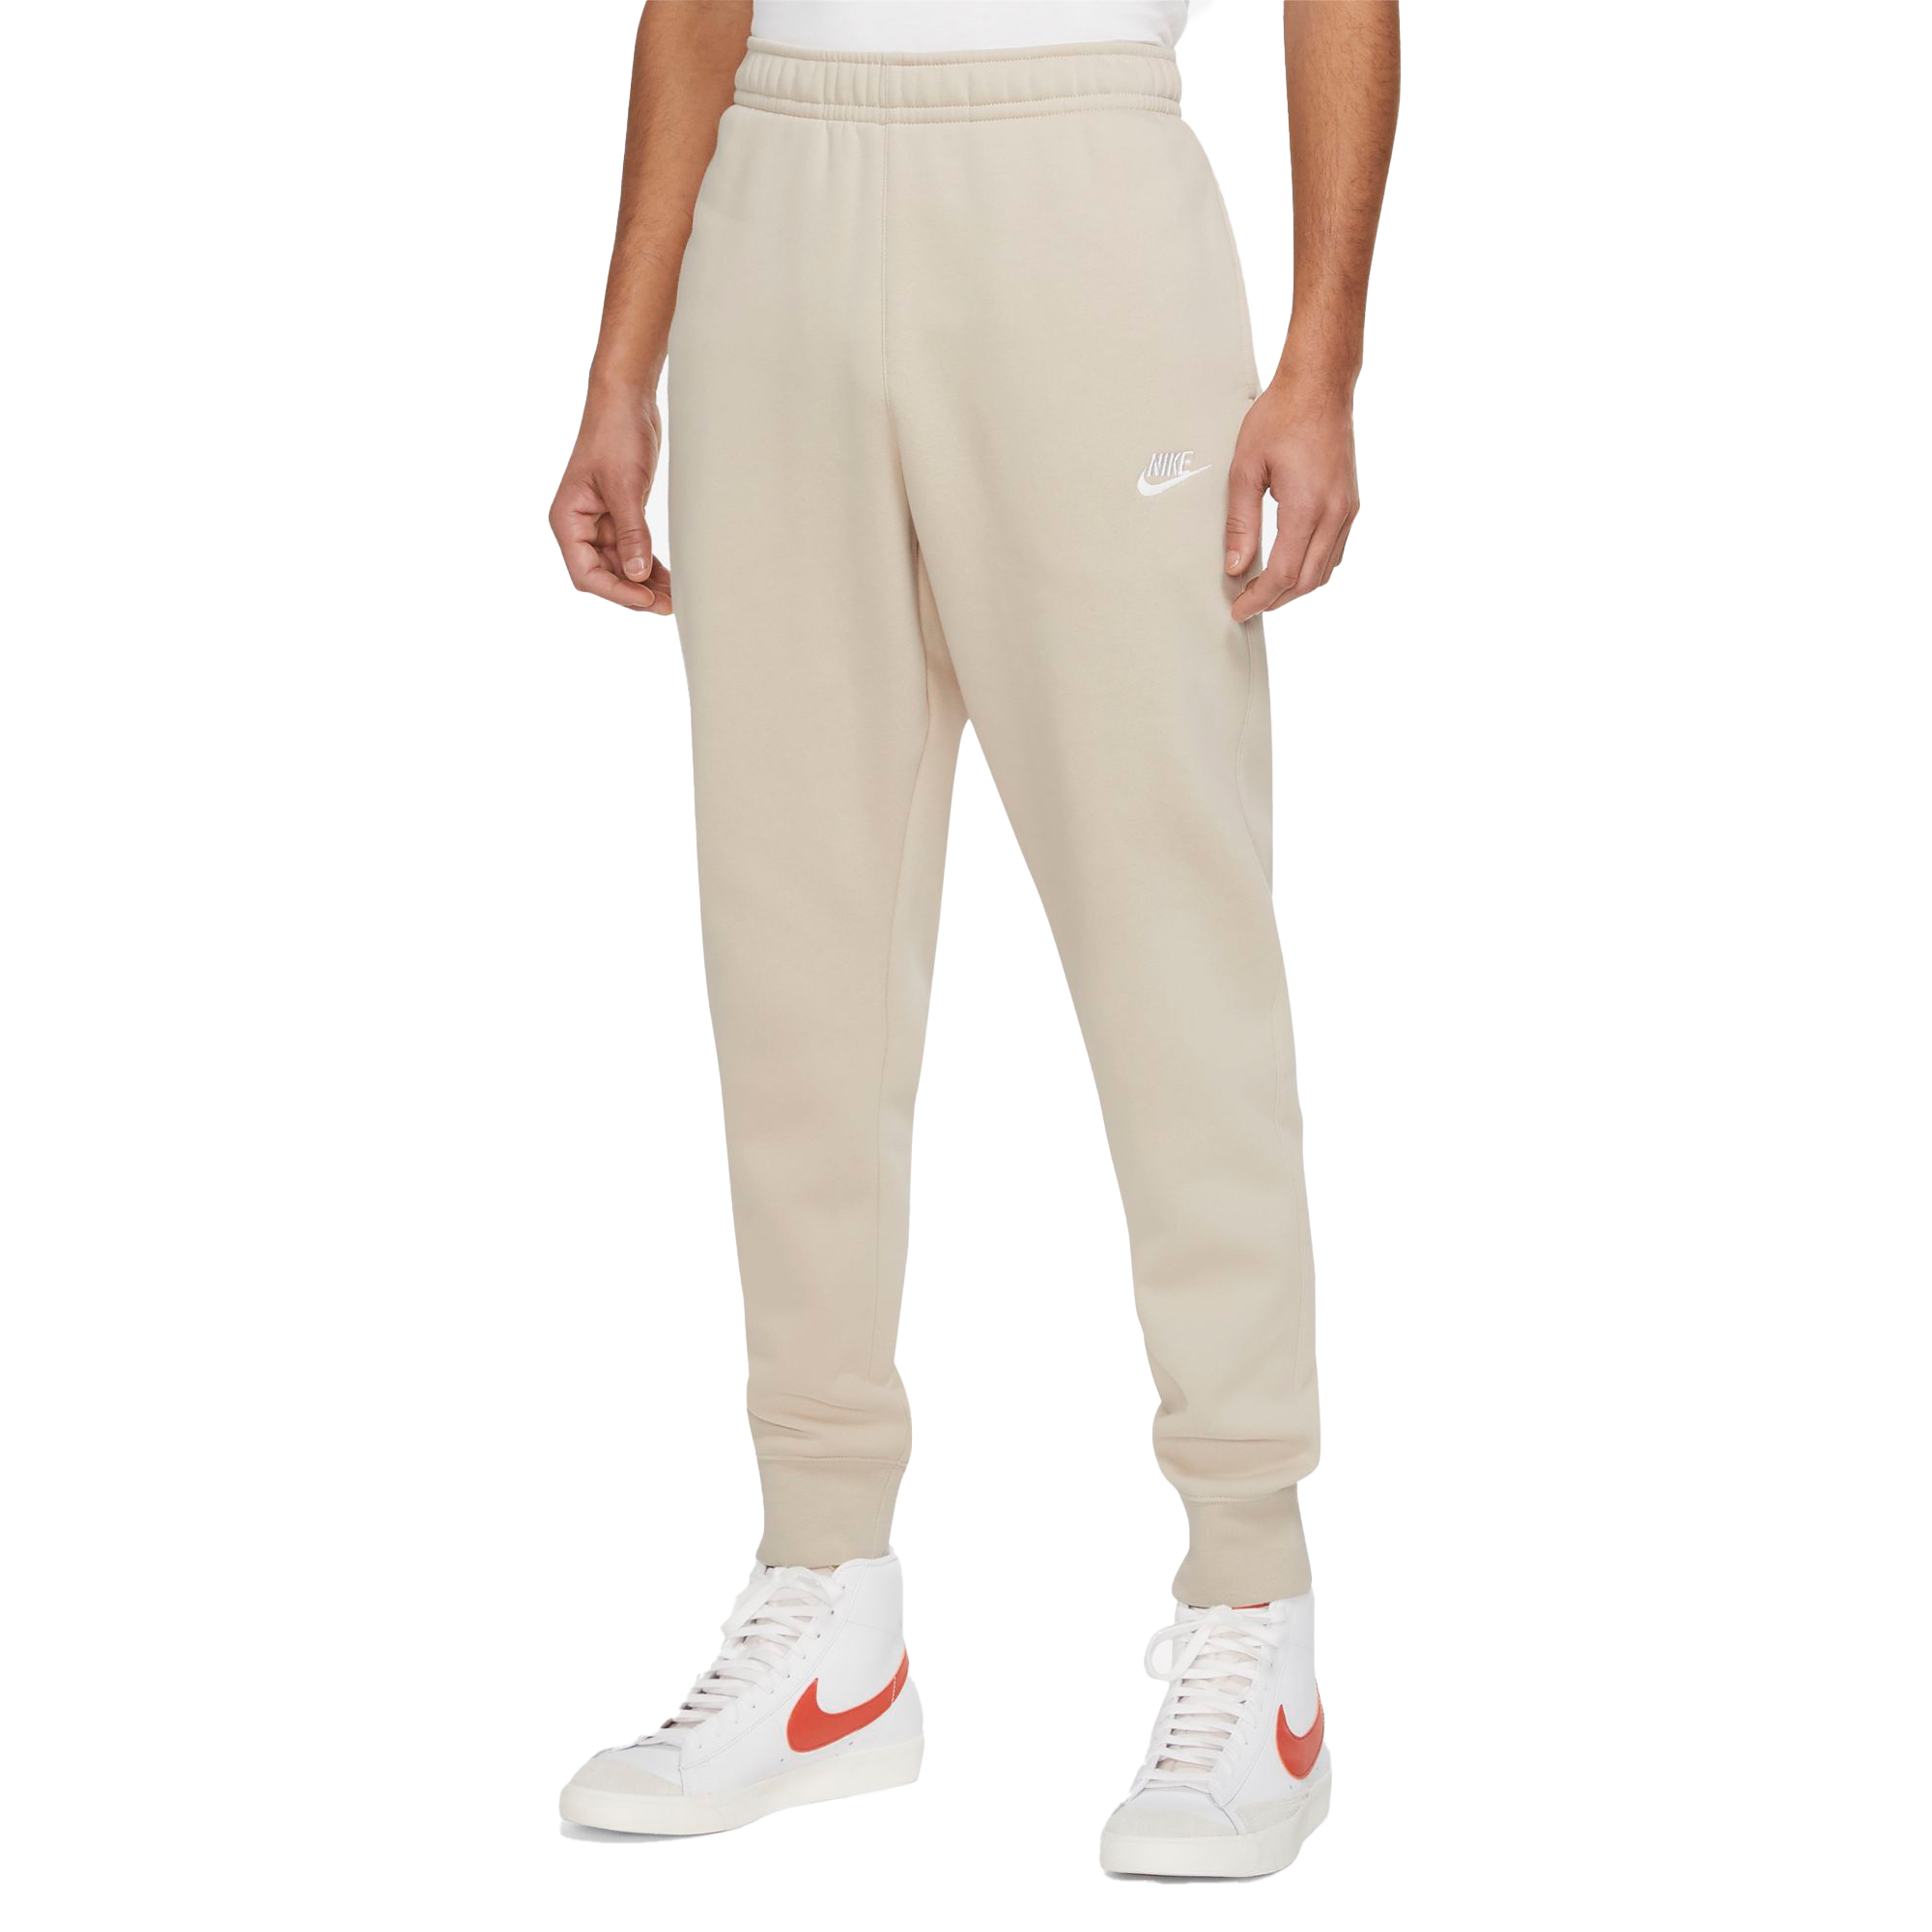 Tek Gear® Women's Ultra Soft Fleece Pants in Rose Size L Short NWT